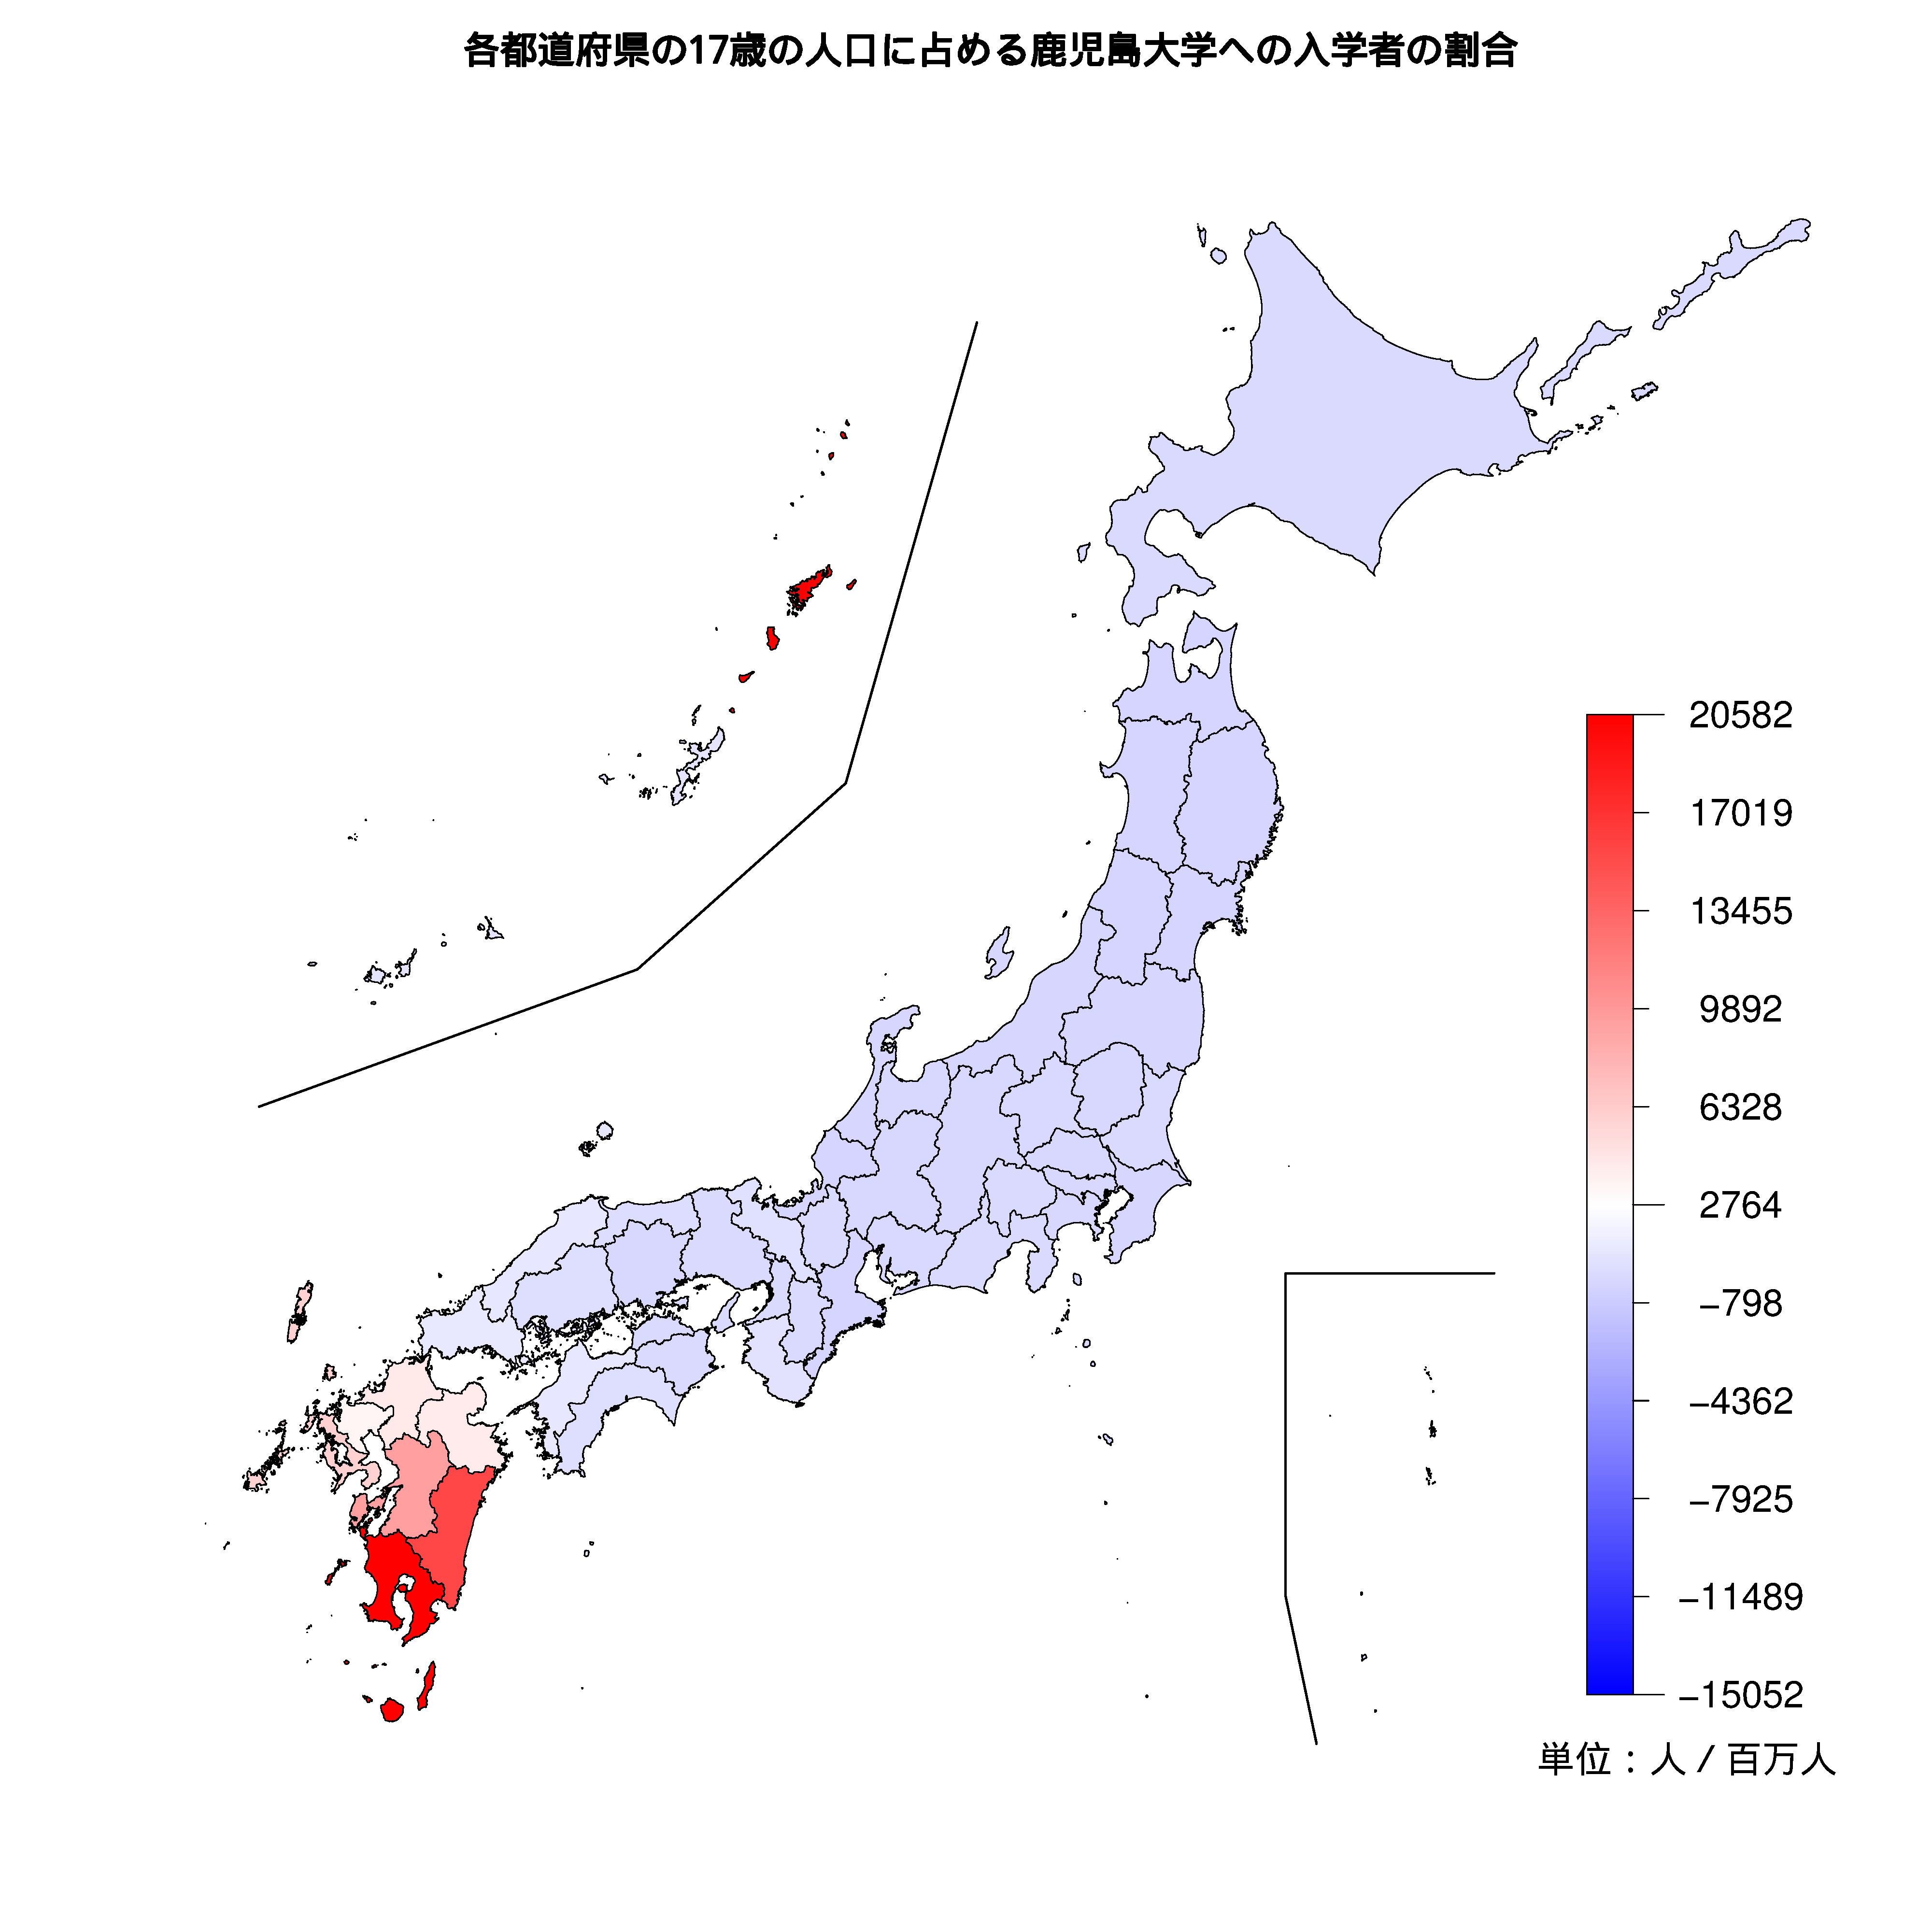 鹿児島大学への入学者が多い都道府県の色分け地図